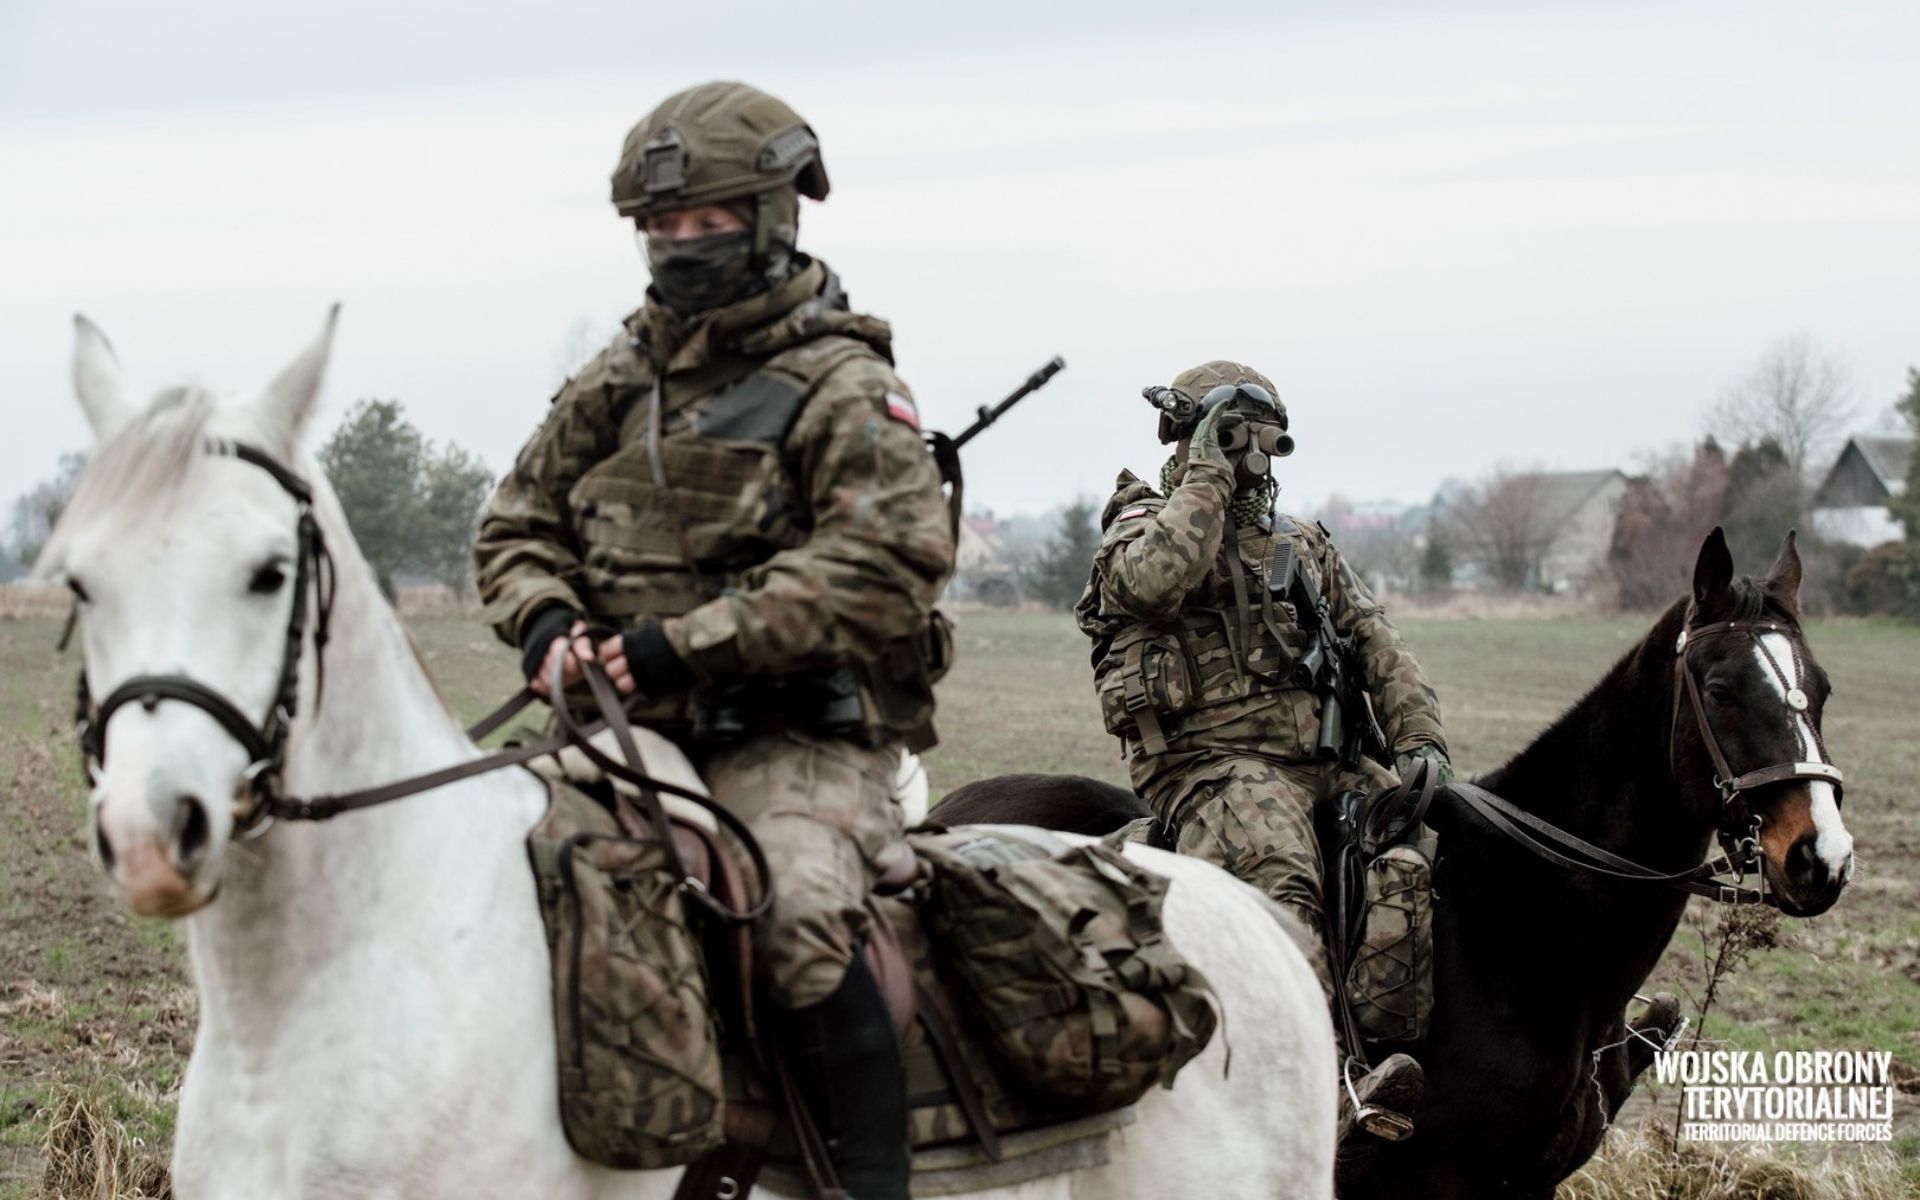 Lubelscy Terytorialsi prowadzą patrole konne na straży bezpiecznej granicy (zdjęcia)